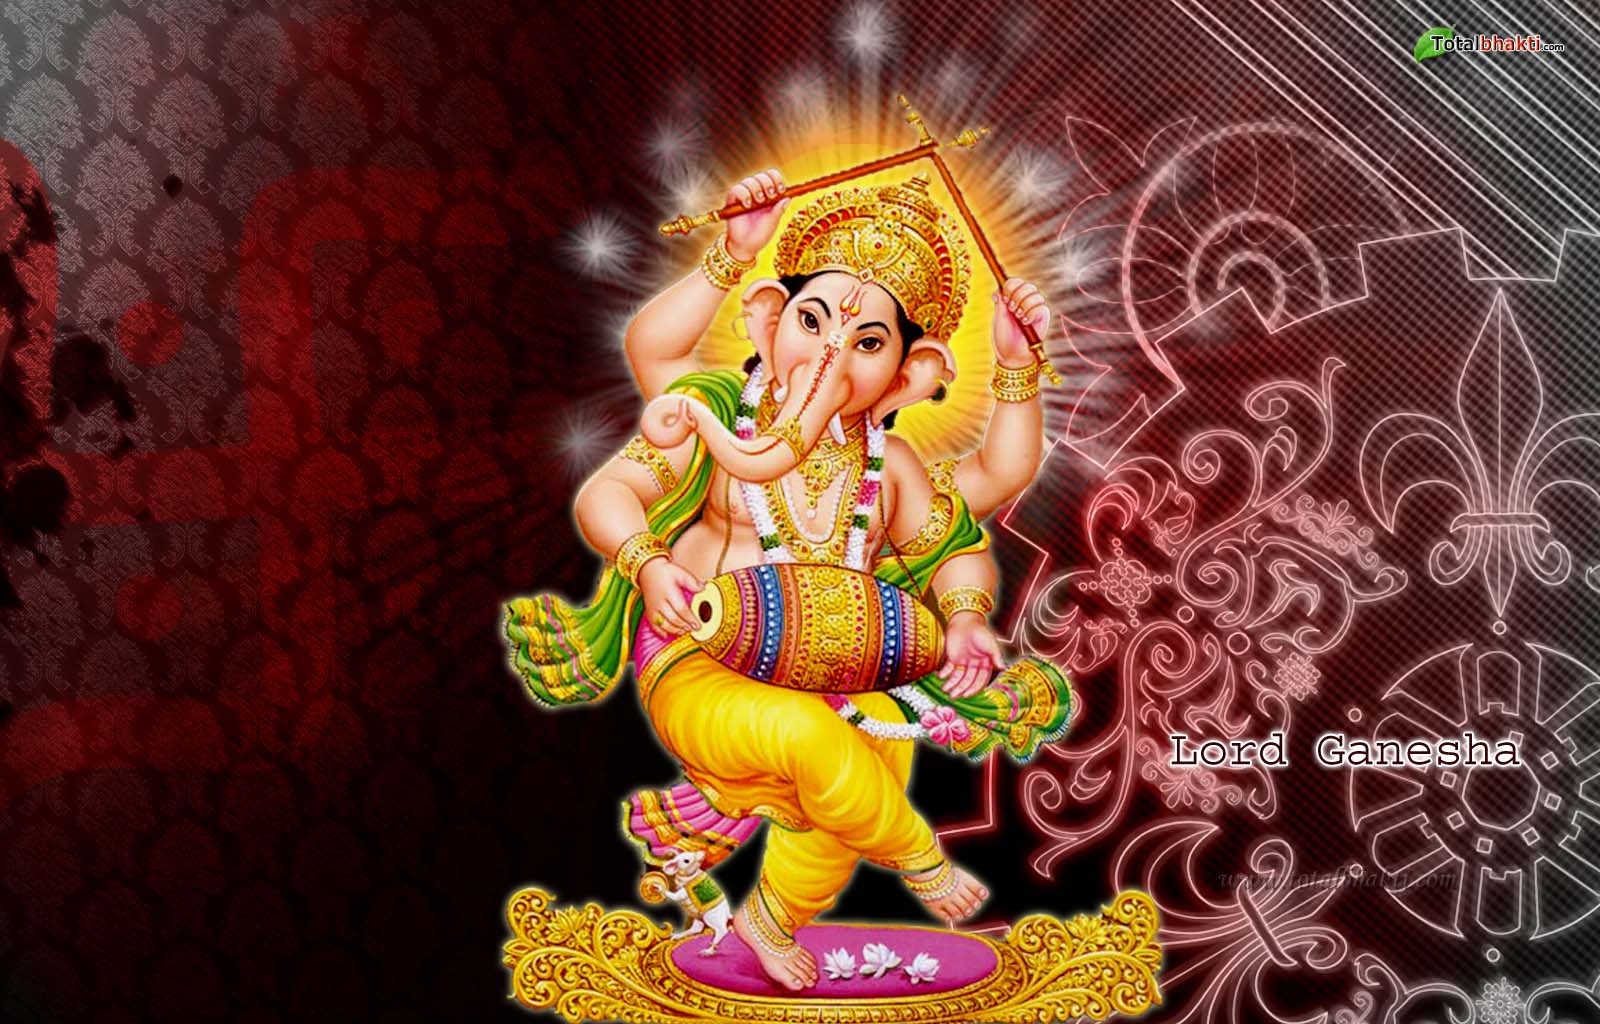 Lord Ganesha Wallpaper For Desktop Jpg